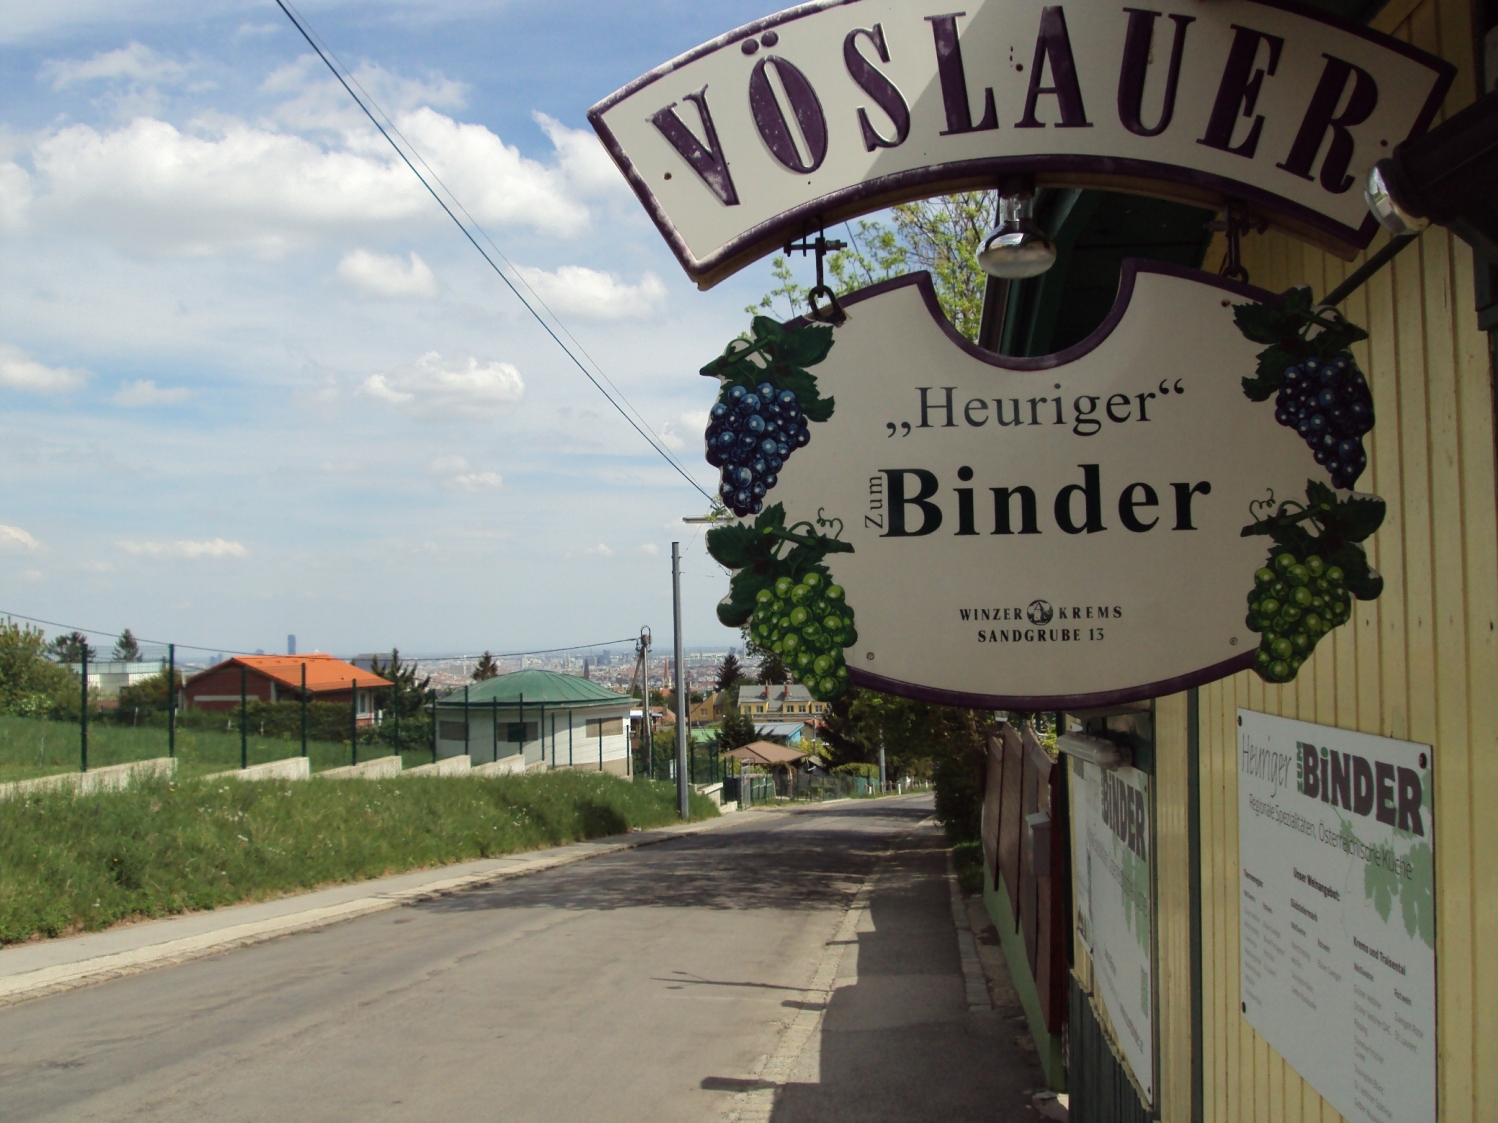 Heuriger Binder_Vienna